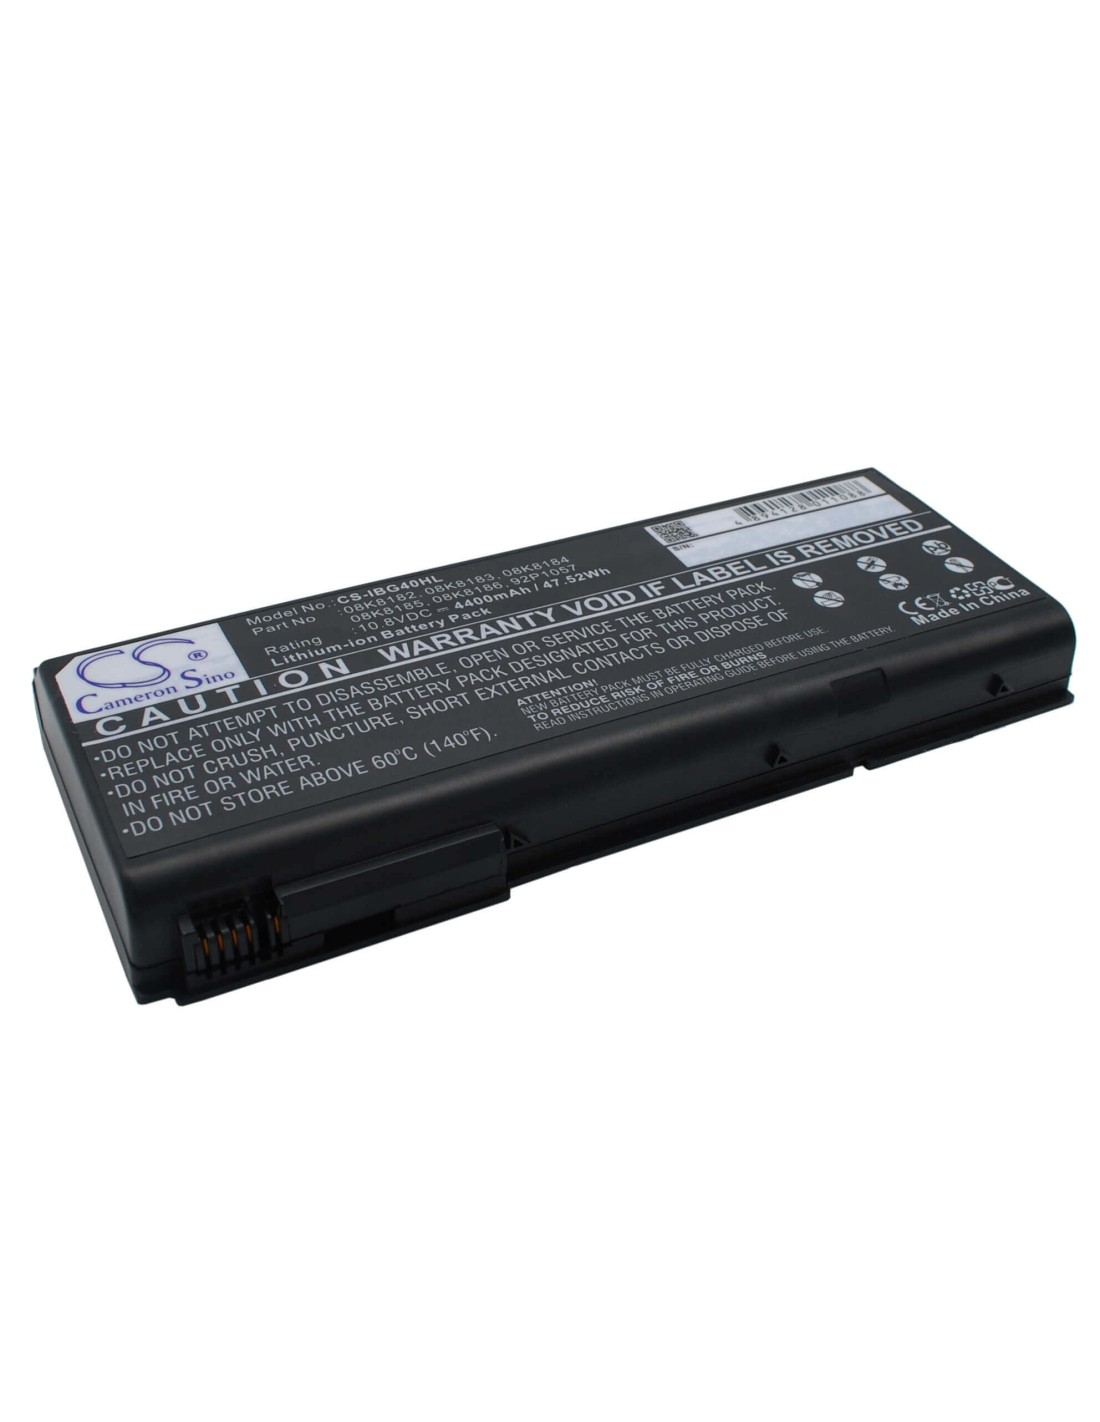 Black Battery for Ibm Thinkpad G40, G41, Thinkpad G40 Series 10.8V, 4400mAh - 47.52Wh